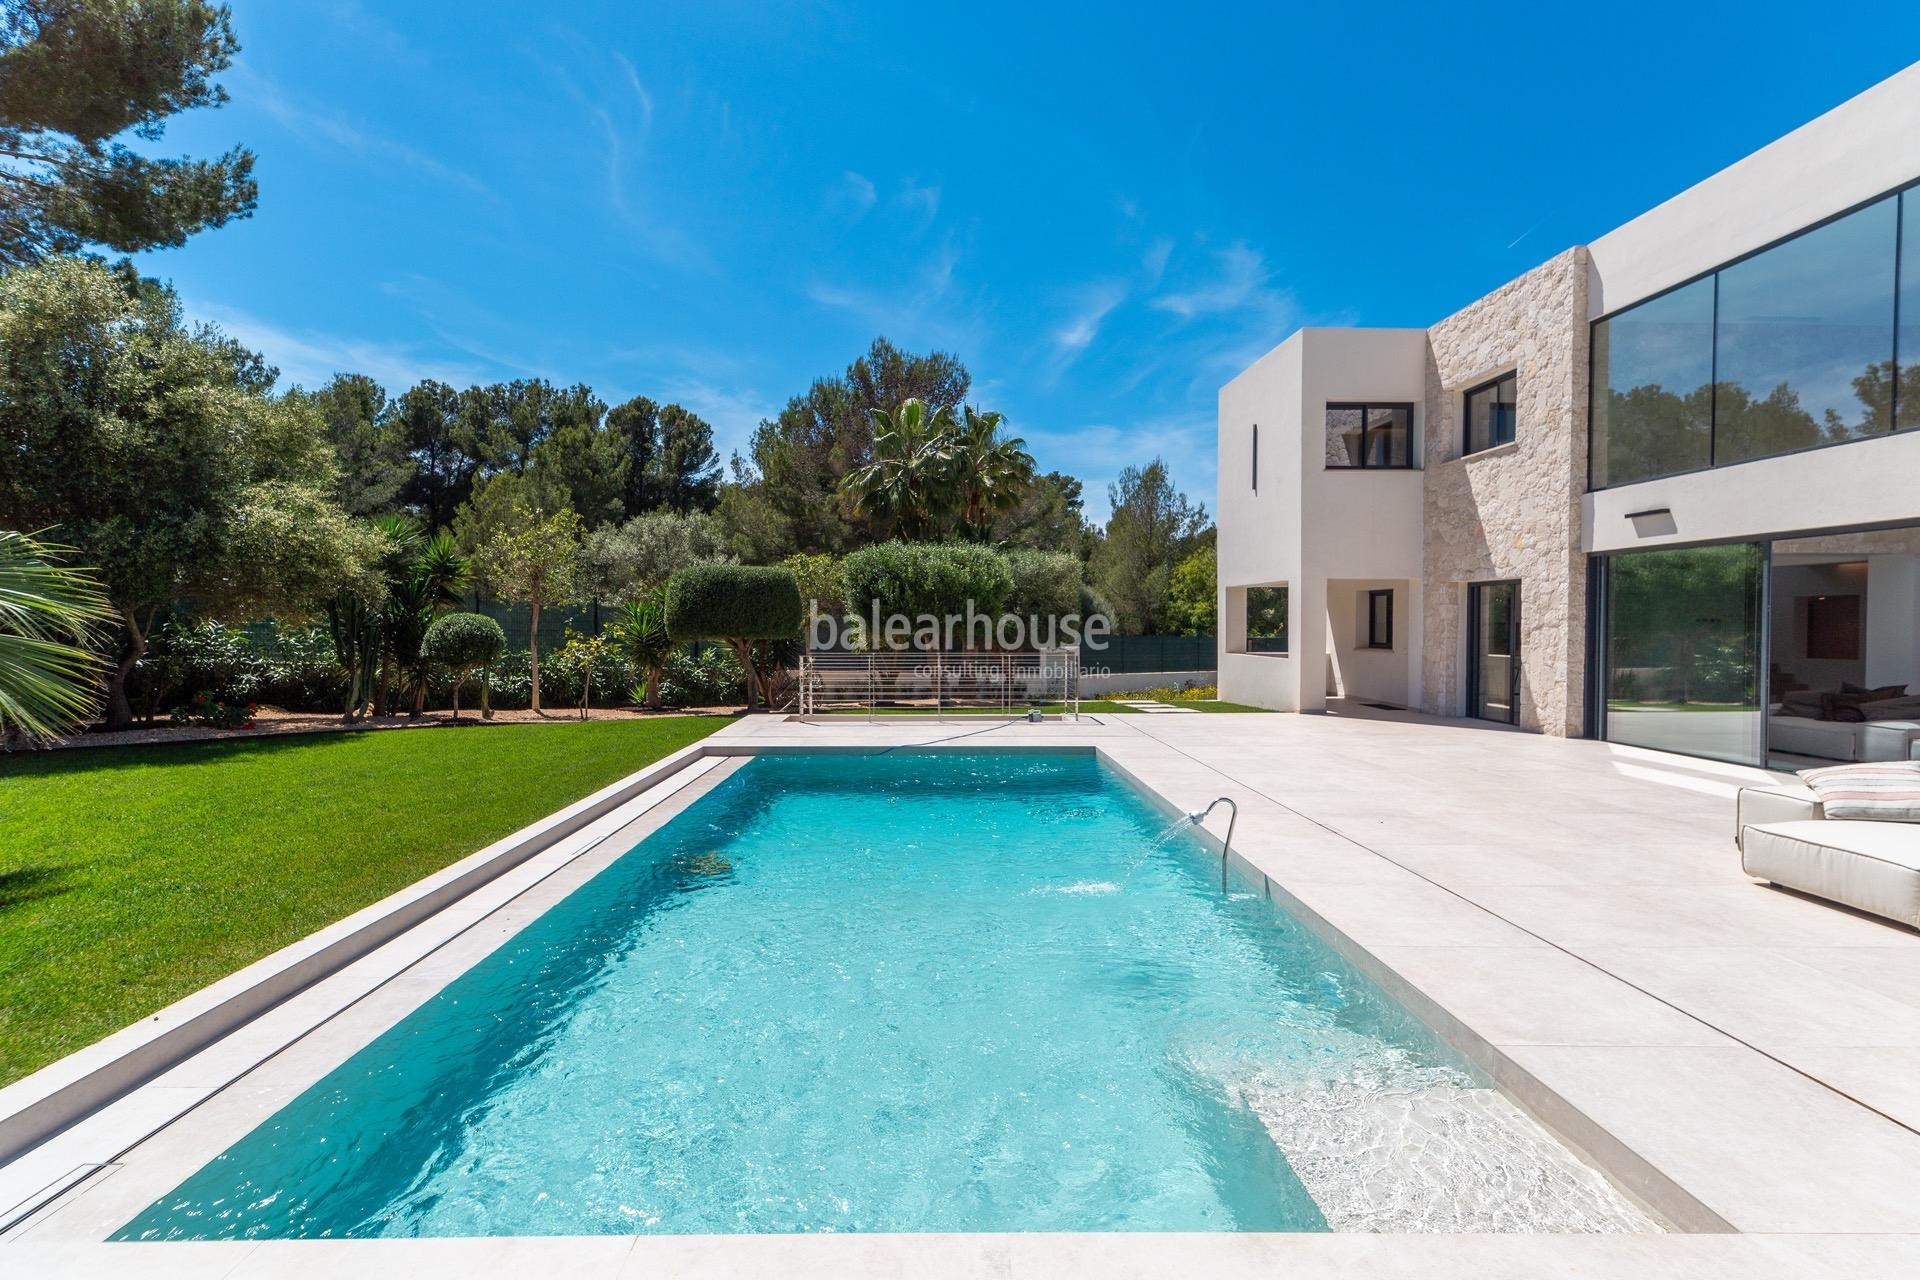 Impecable villa de diseño moderno llena de luz y grandes espacios de jardín y piscina en Santa Ponsa